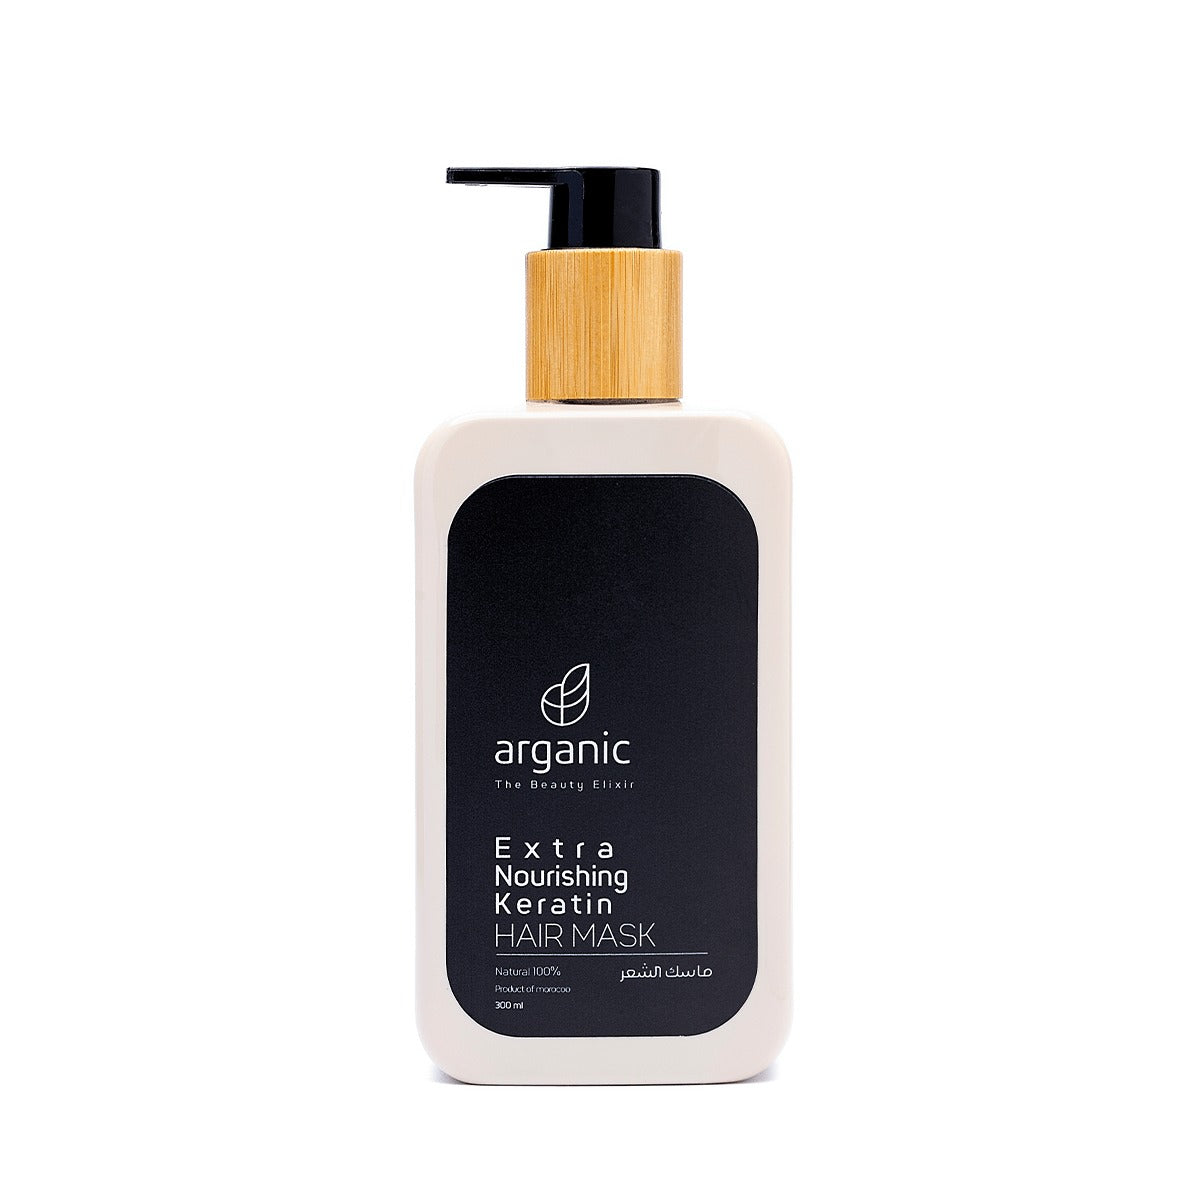 Arganic keratin hair mask bottle with natural ingredients label